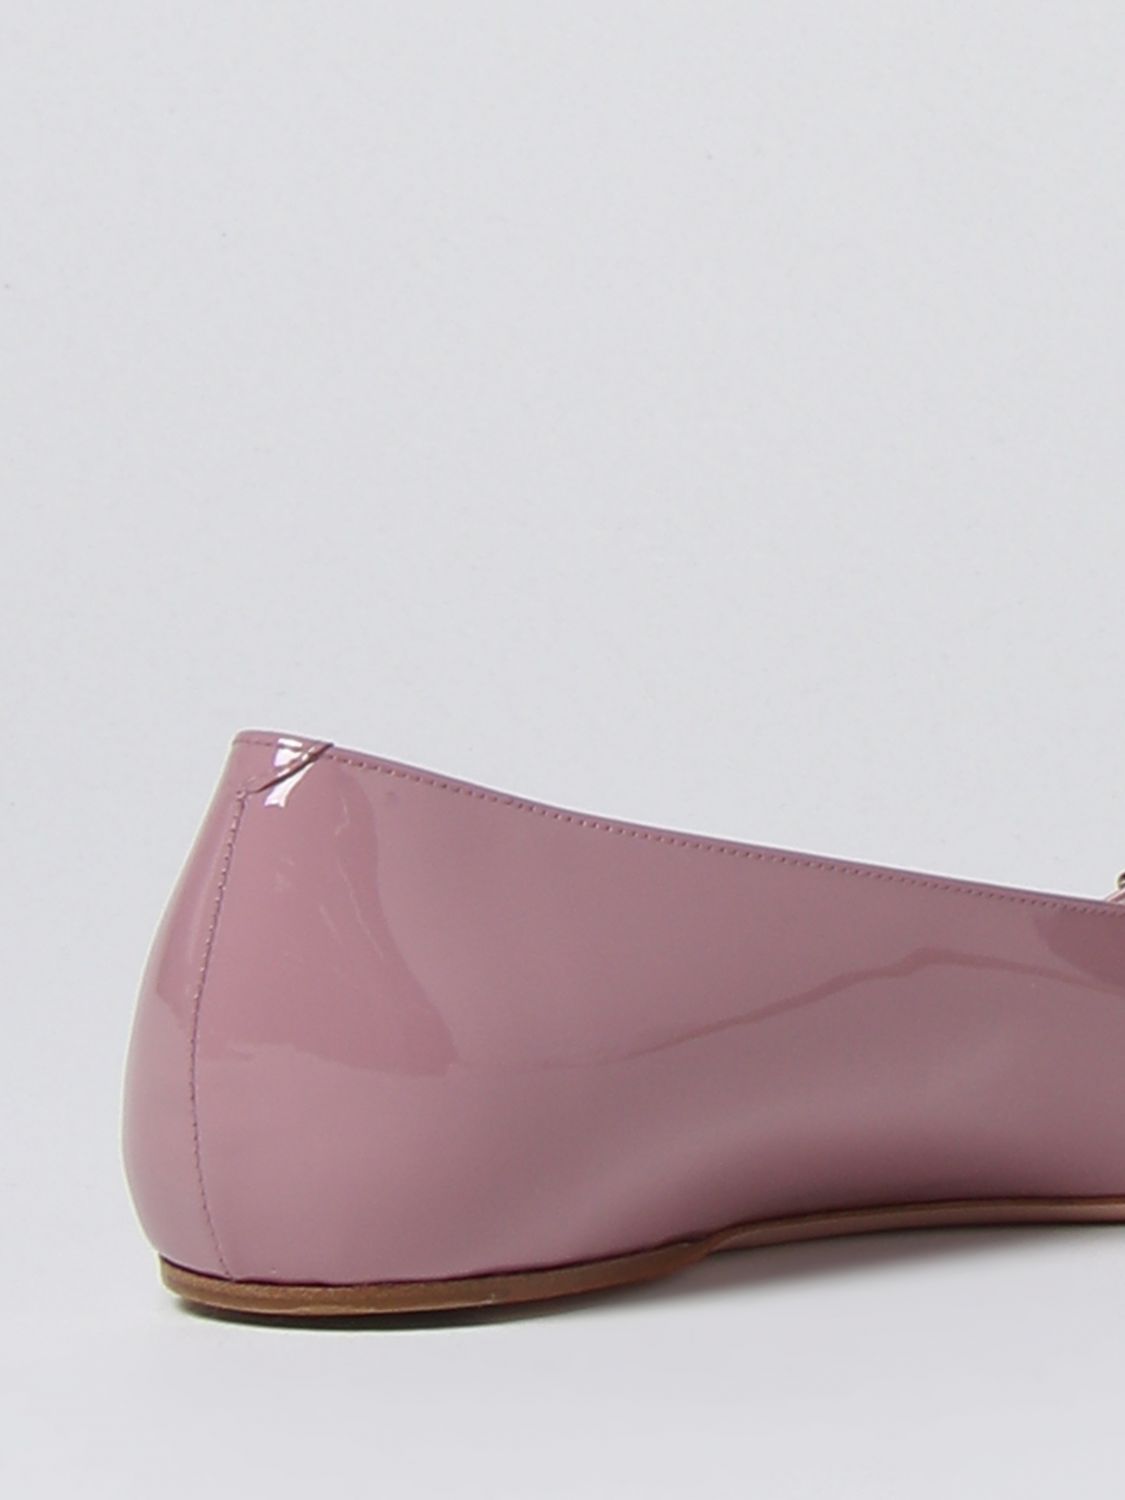 GIÀY ROGER VIVIER Pink ballet flats shoes